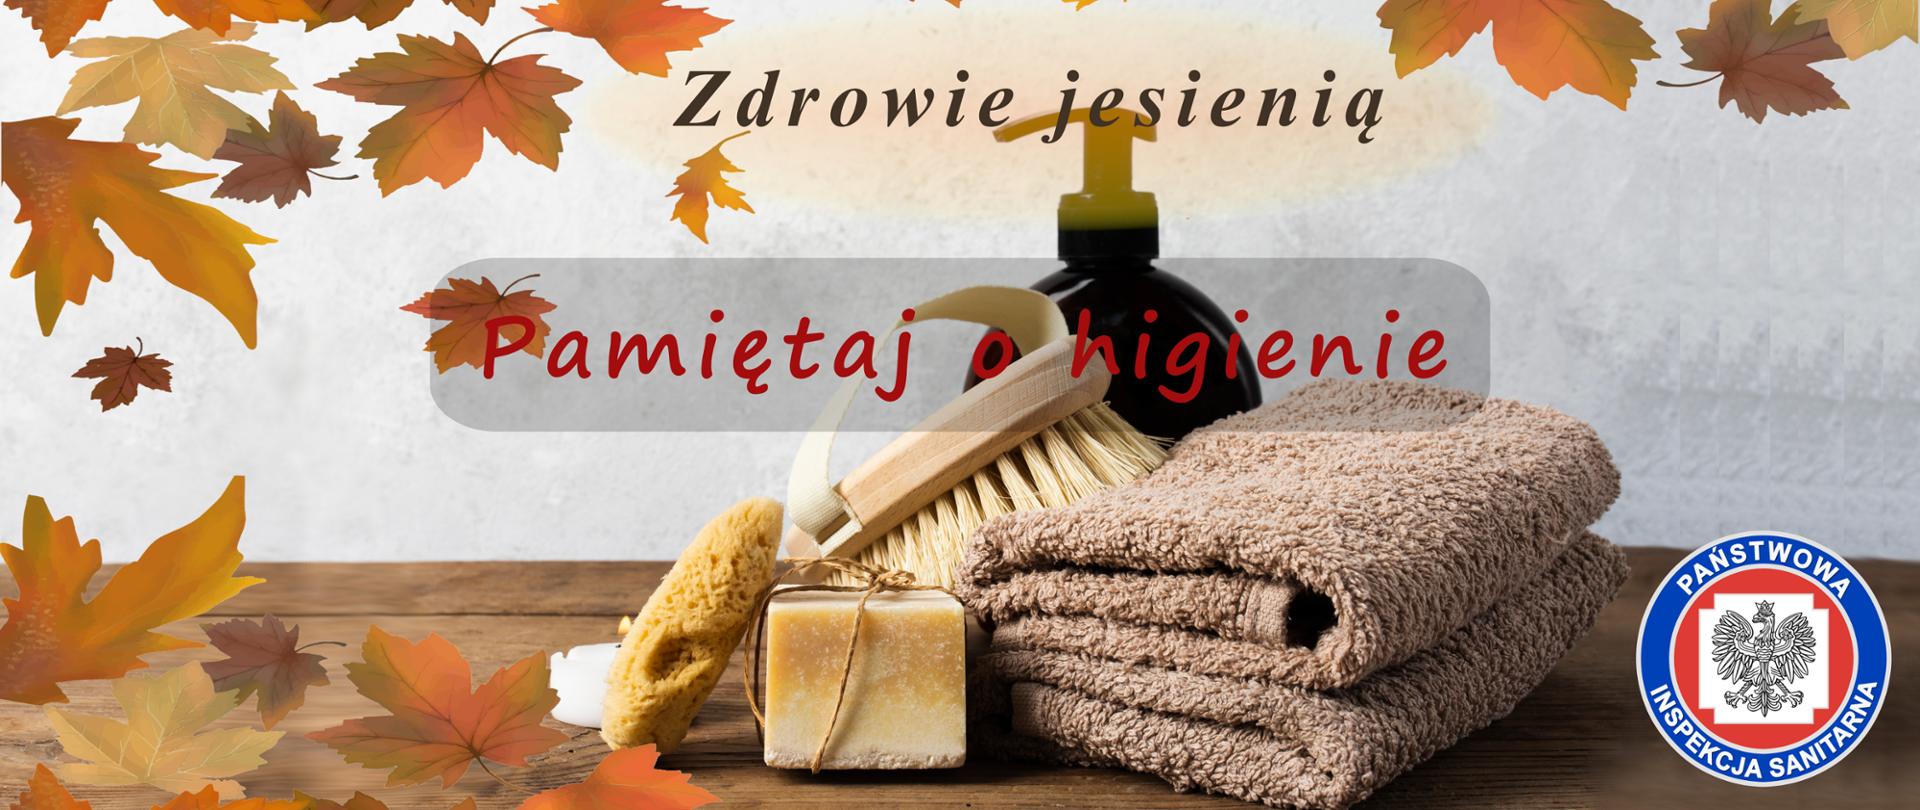 Zdrowie jesienią: pamiętaj o higienie